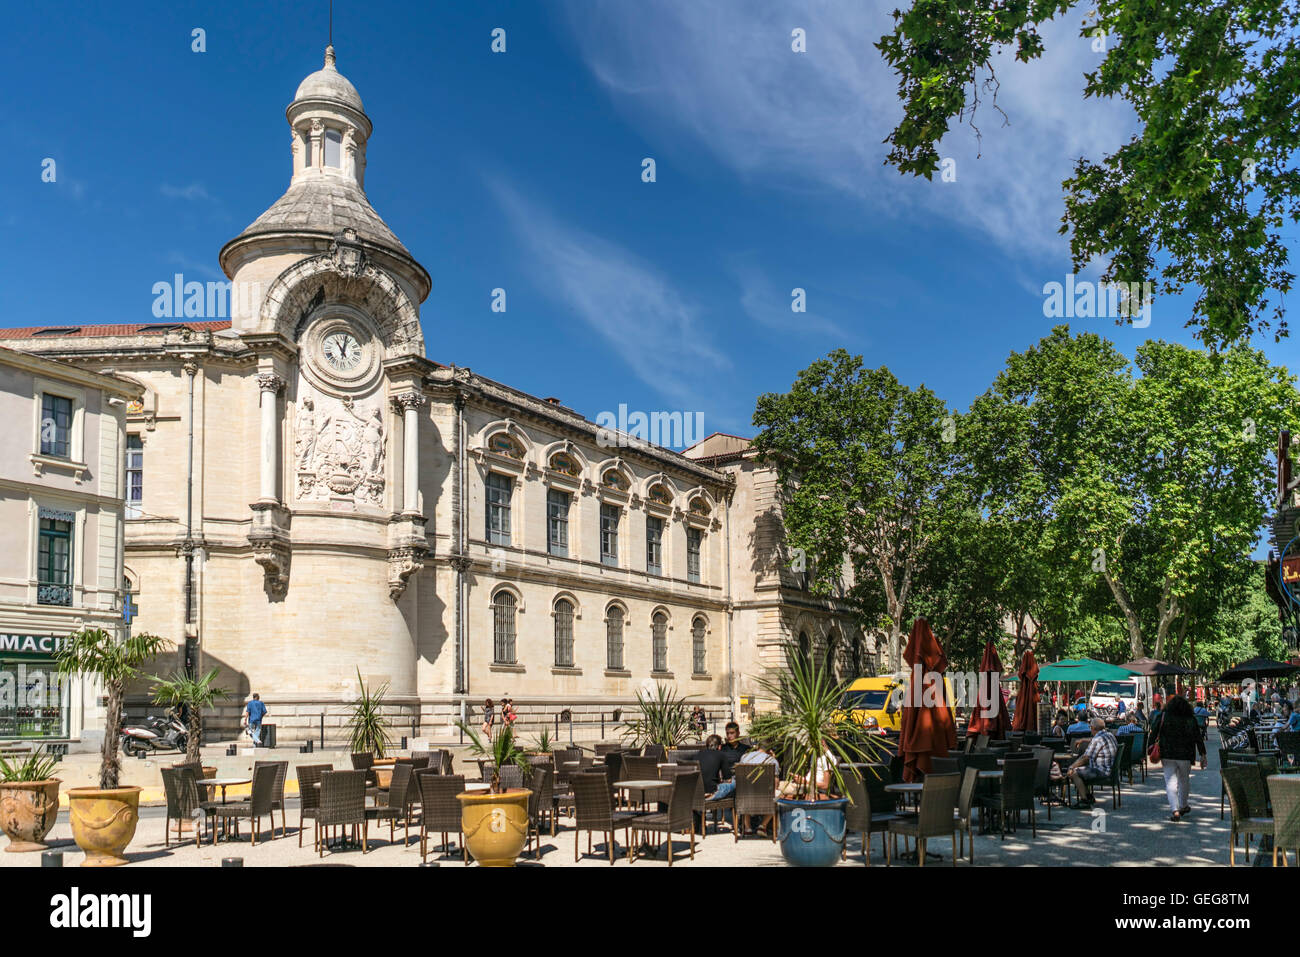 Cafe Restaurant Bourse, Nimes, Languedoc-Roussillion, Provence, France, Europe Stock Photo